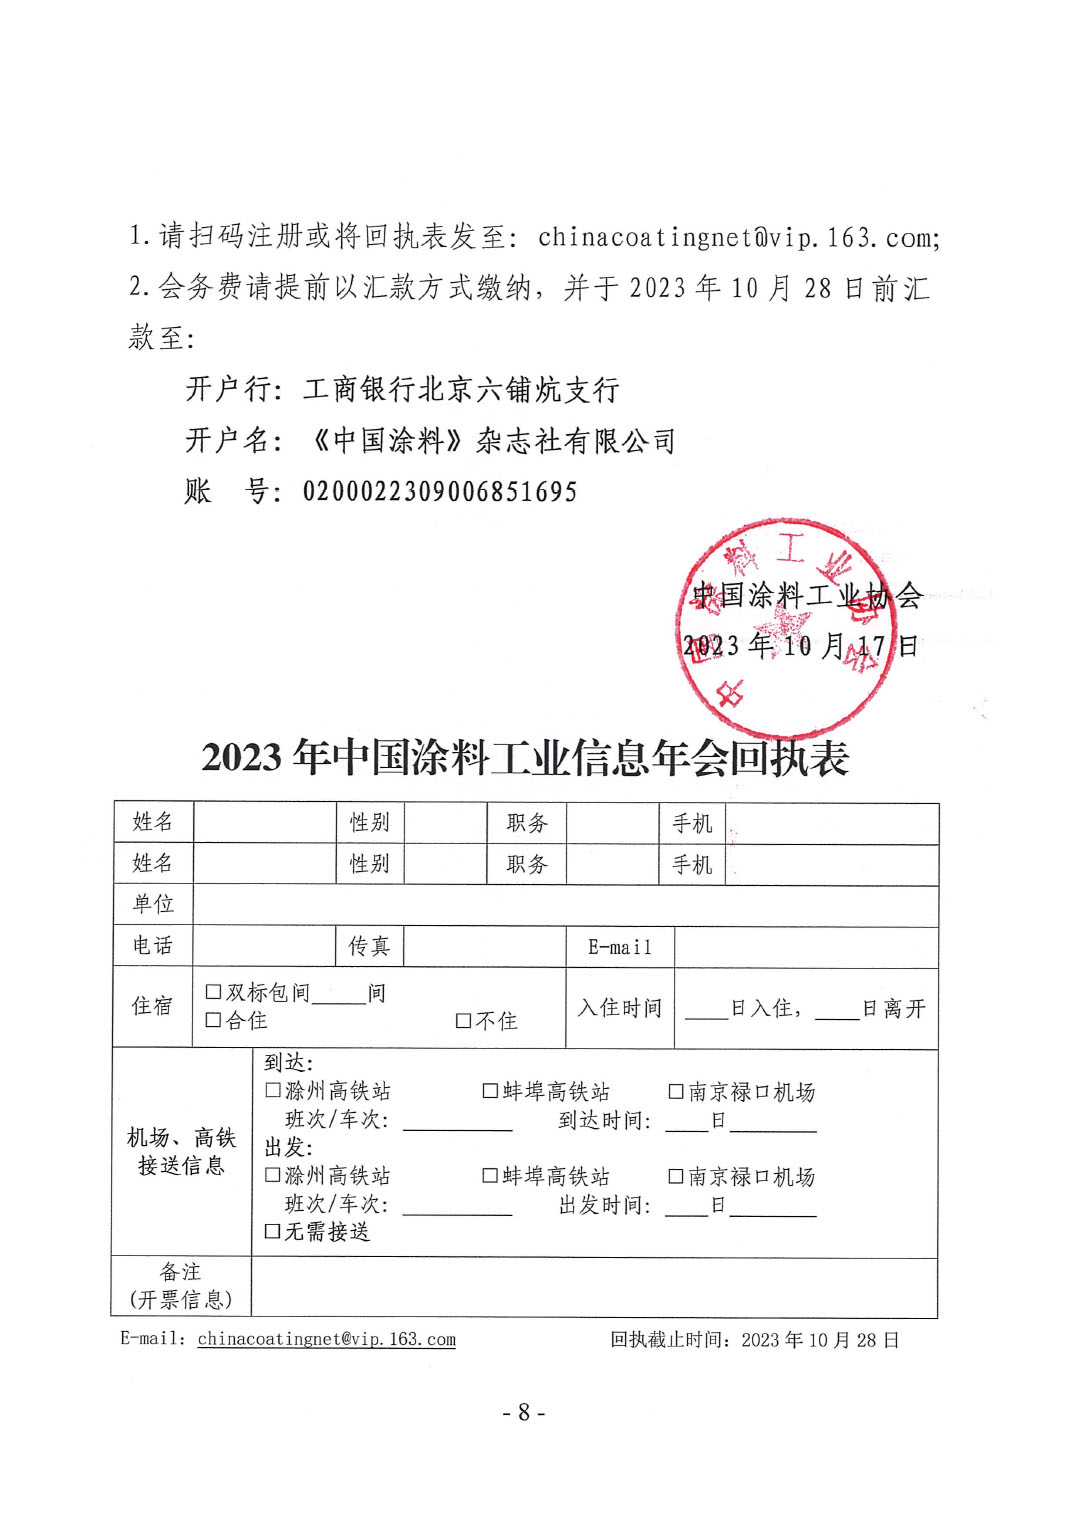 2023年中國涂料工業信息年會通知（明光）1017-8